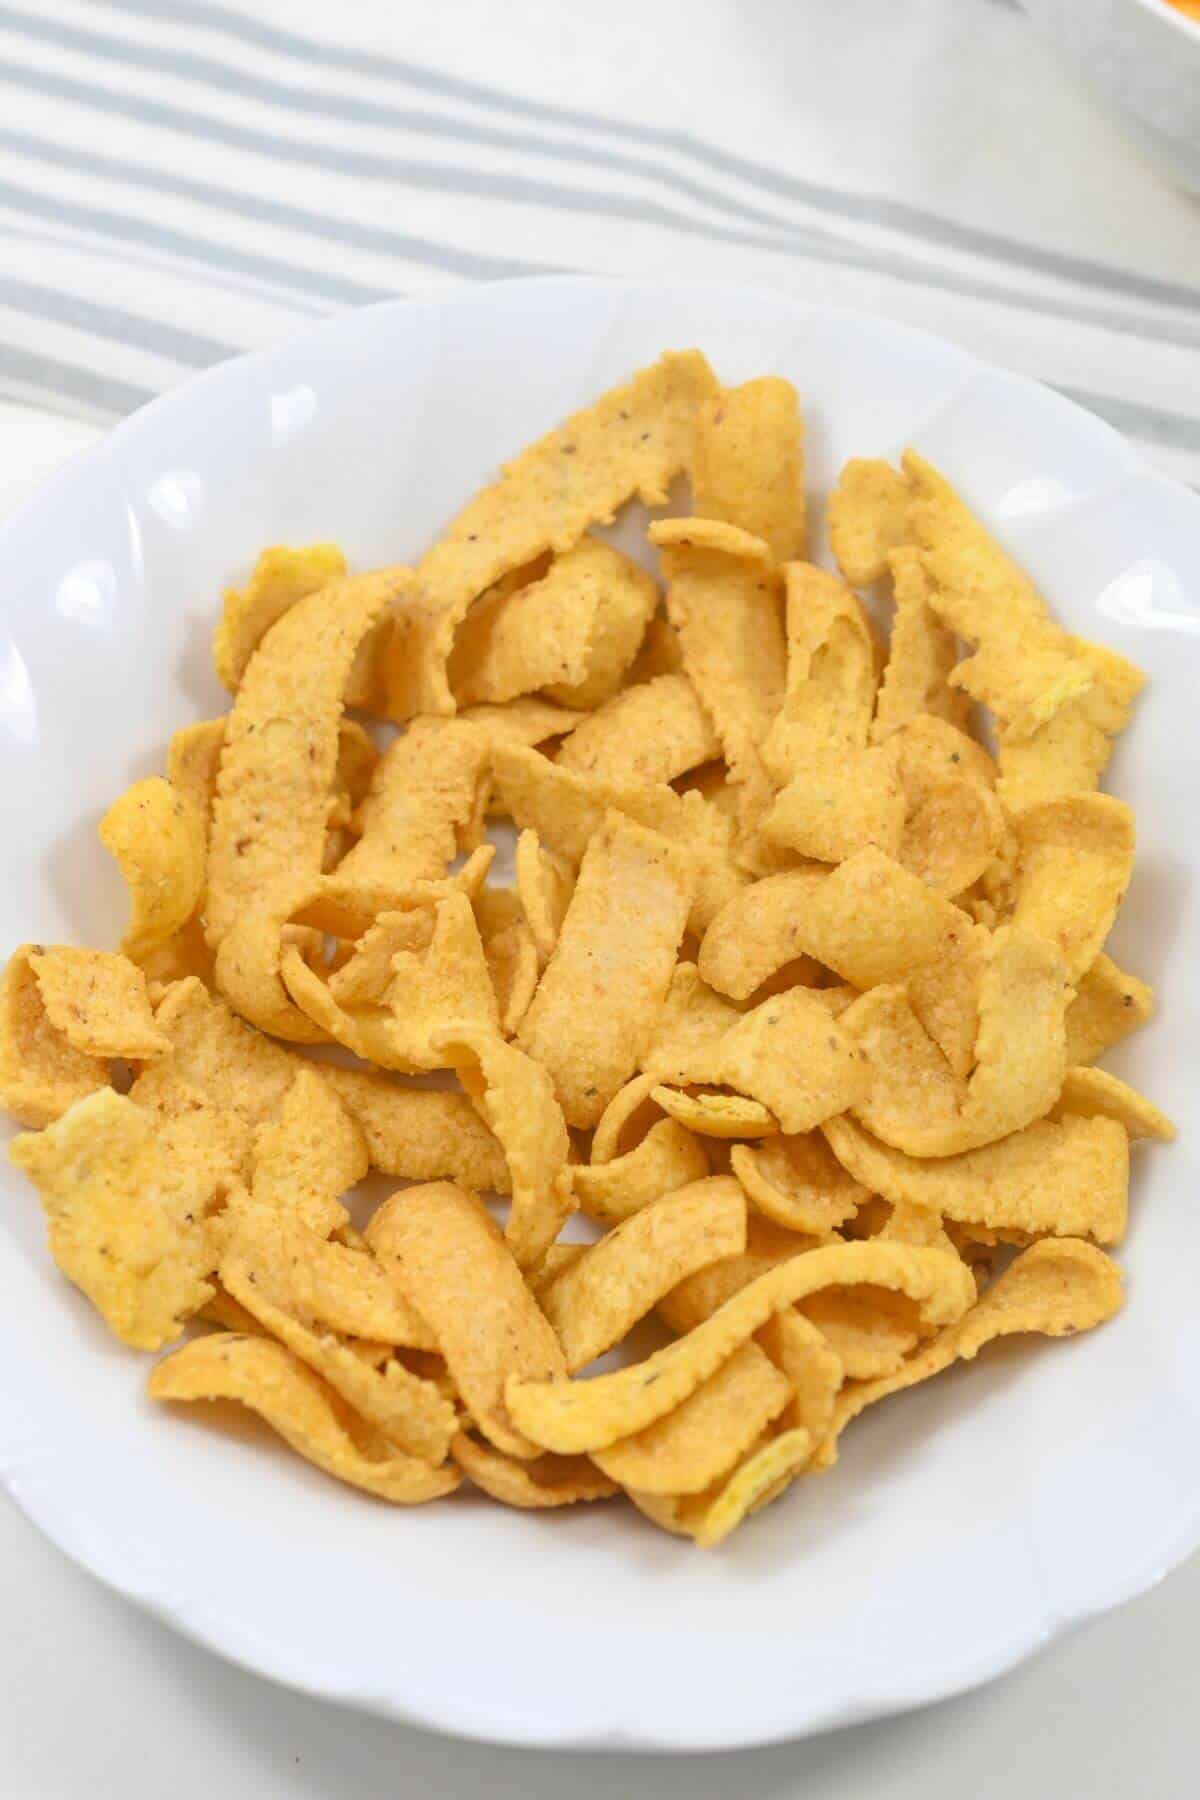 A bowl of Frito corn chips.